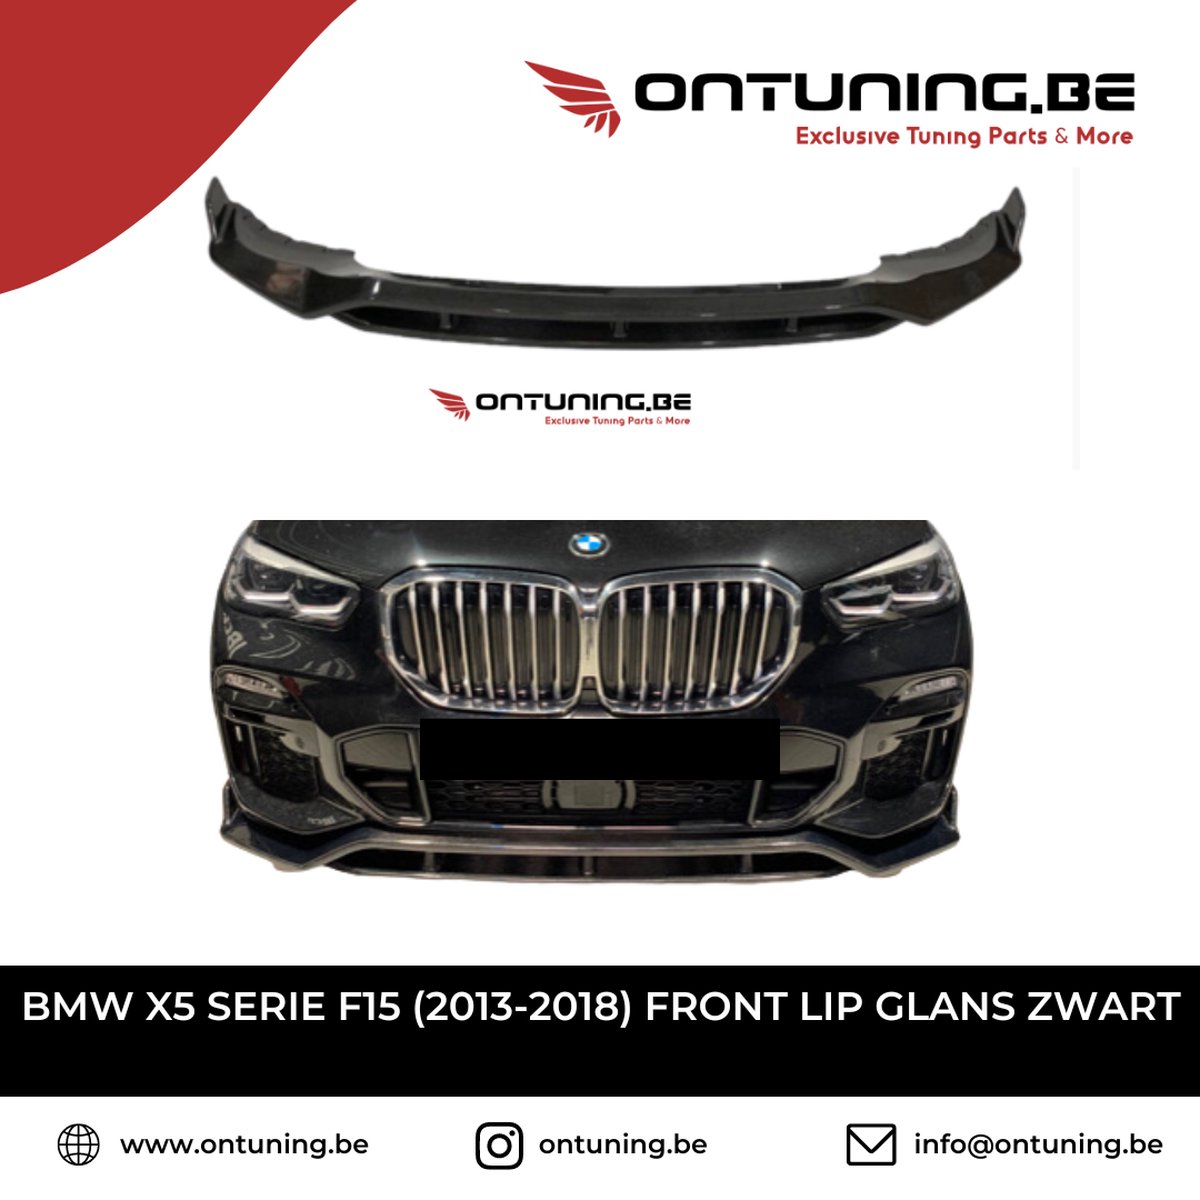 BMW X5 Serie F15 (2013-2018) Front Lip Glans Zwart